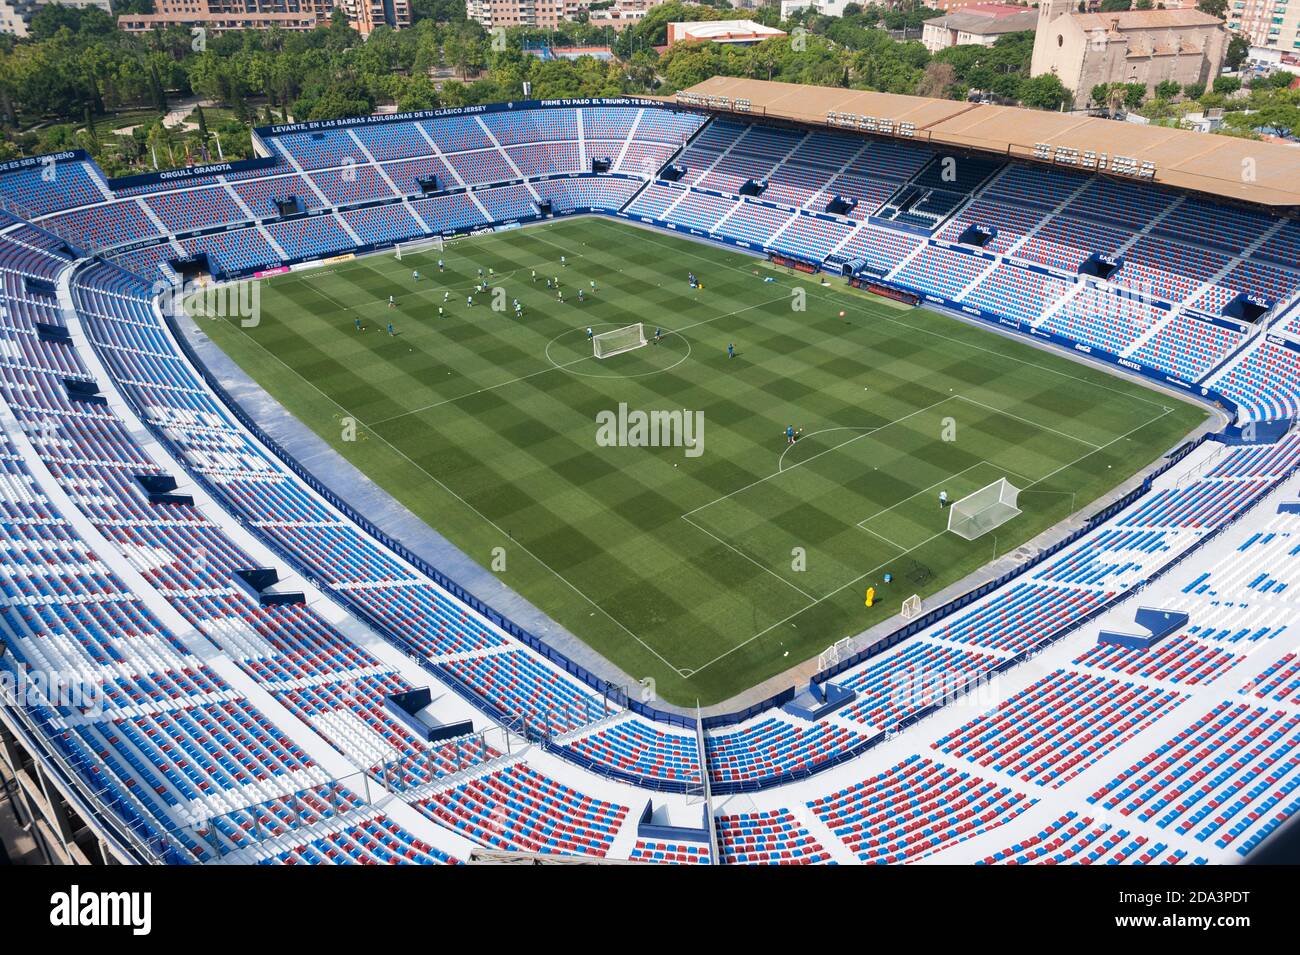 Estadio ciudad de Valencia. Stock Photo